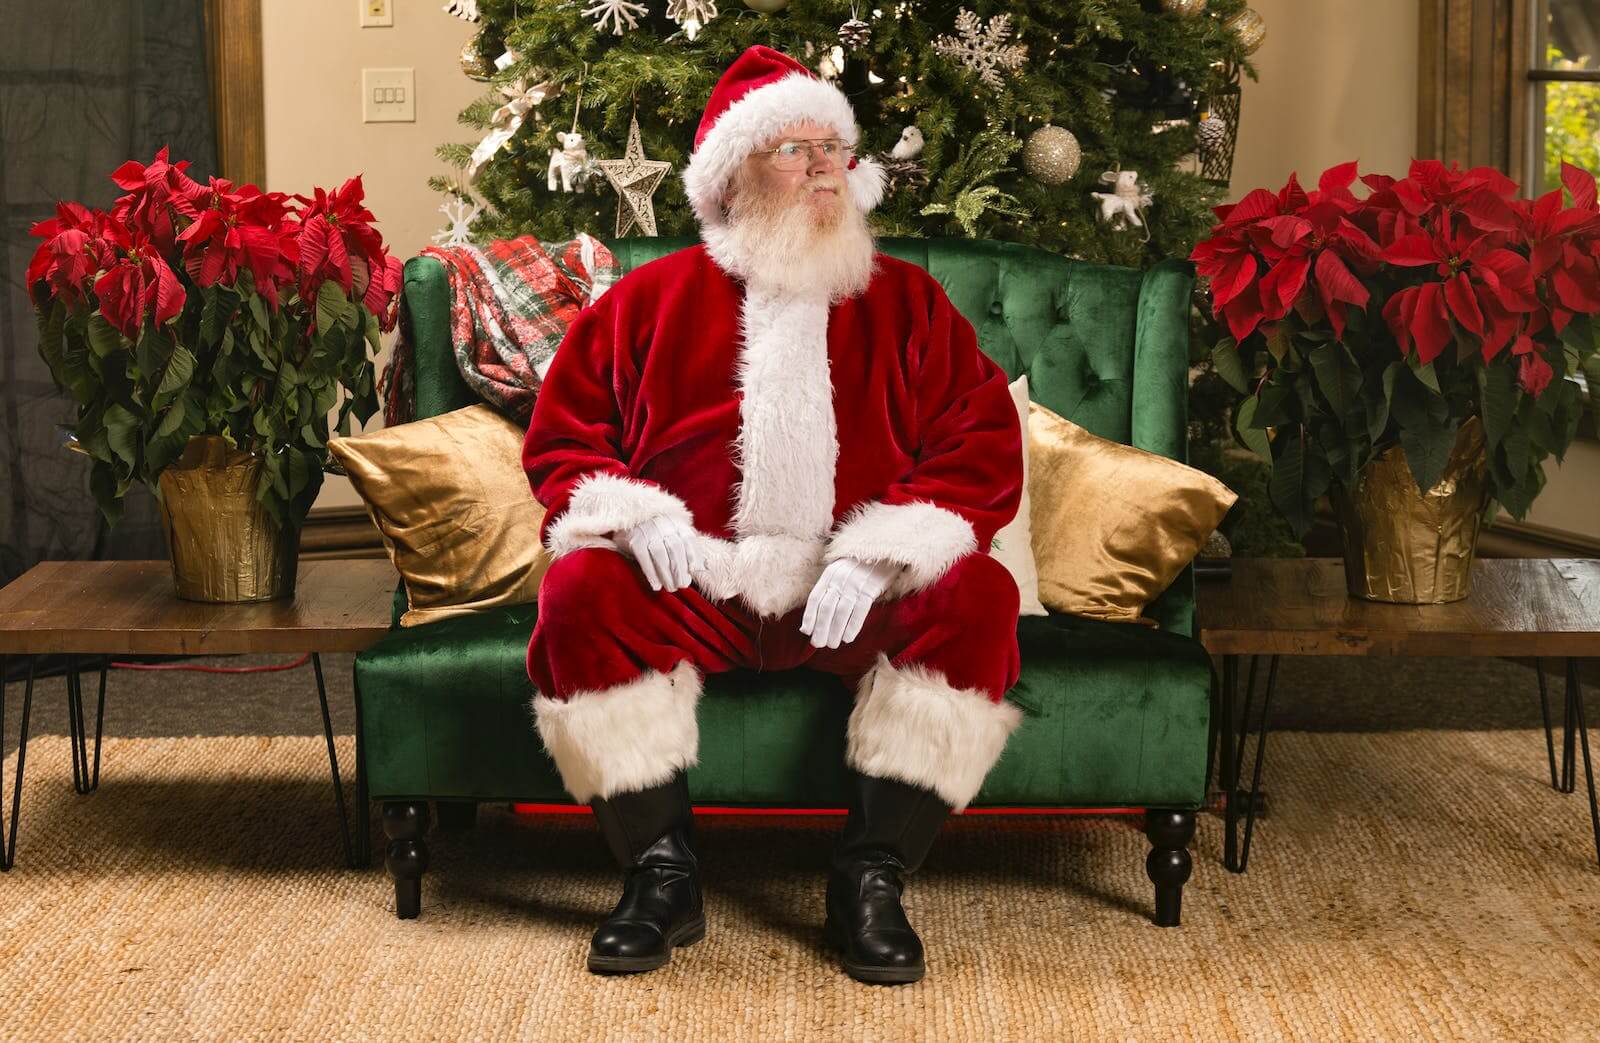 Santa Claus sitting in a chair